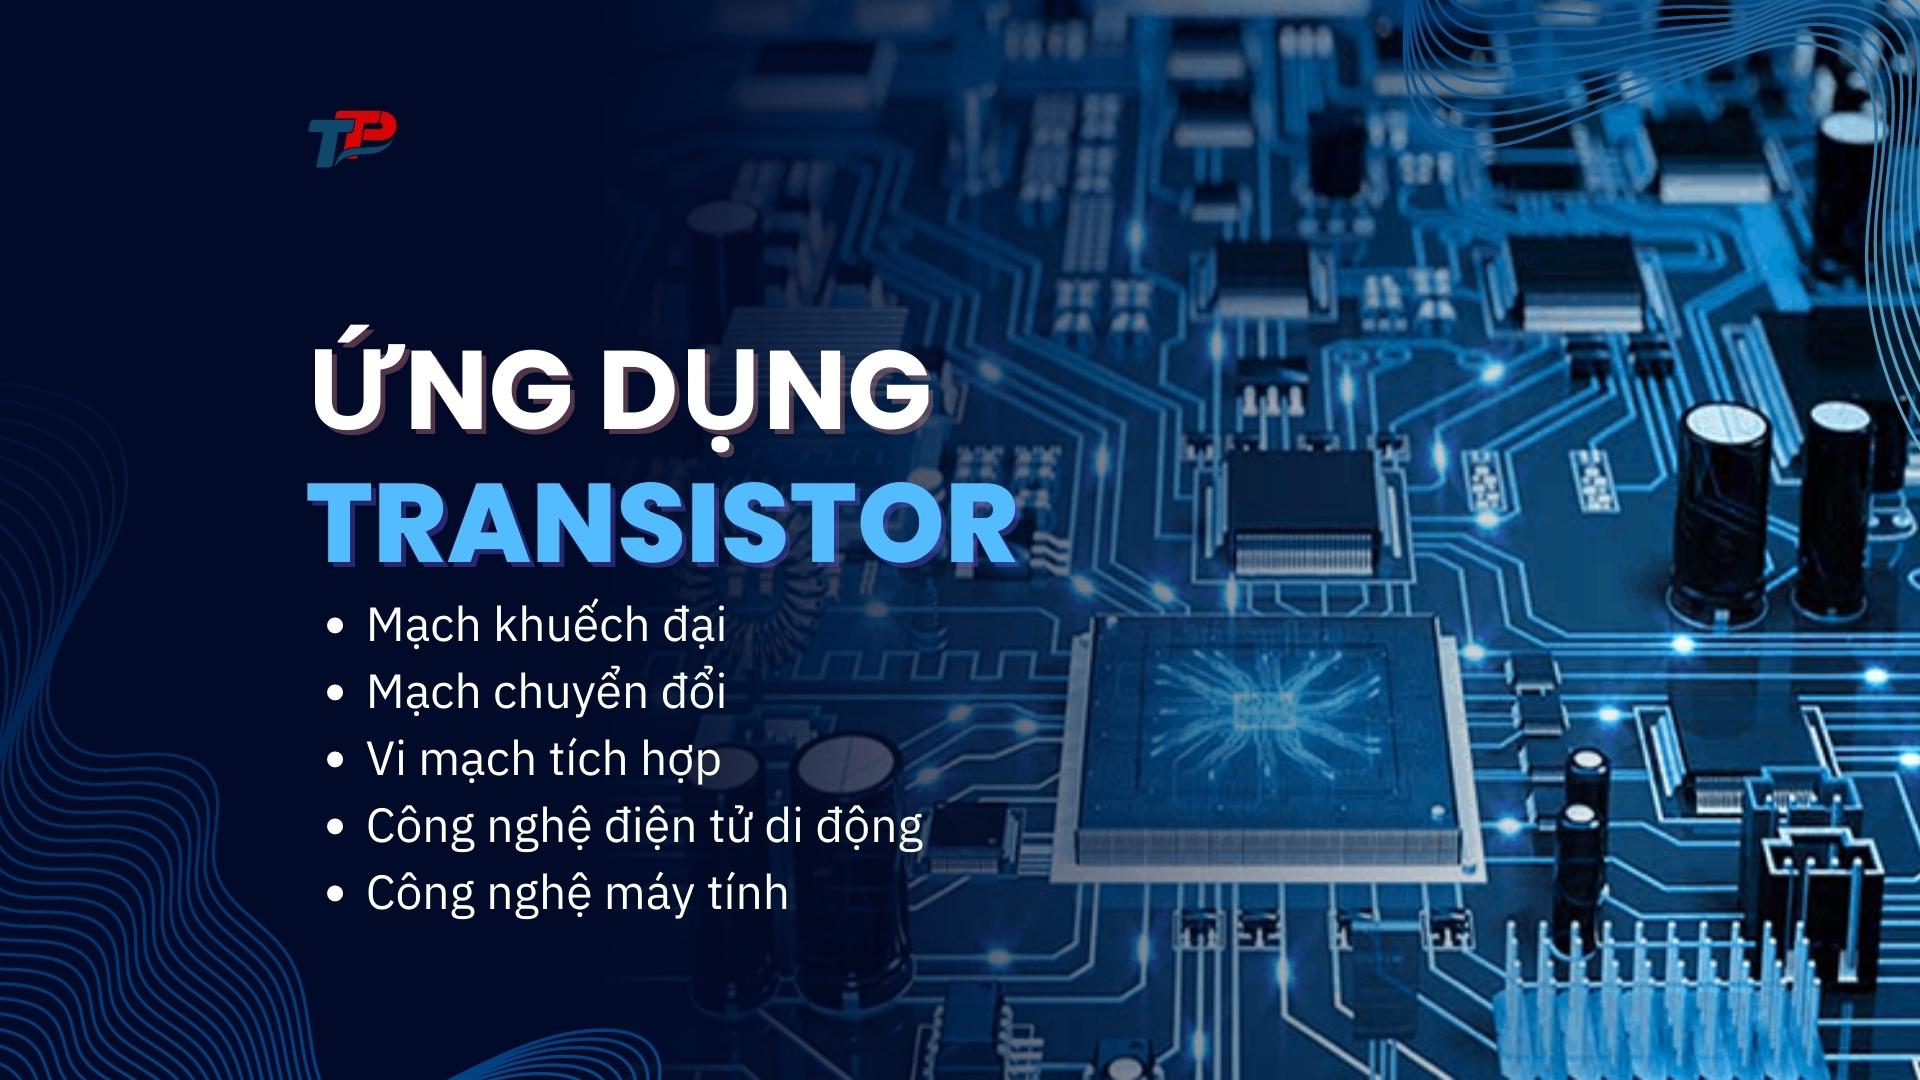 Nguyên lý hoạt động của transistor